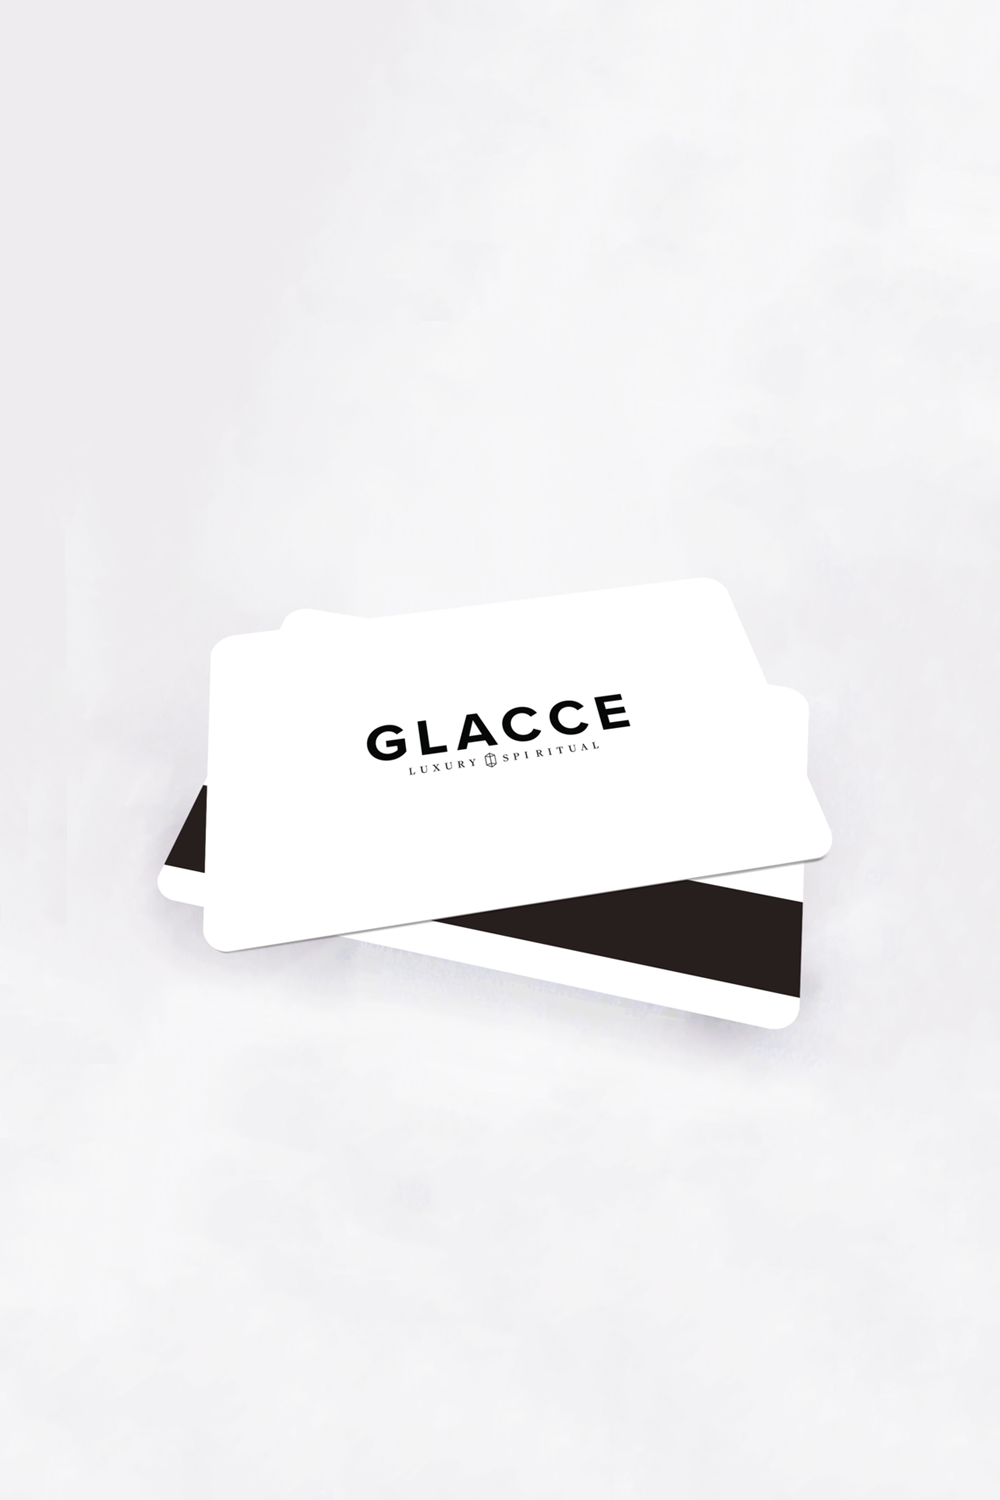 Glacce Card